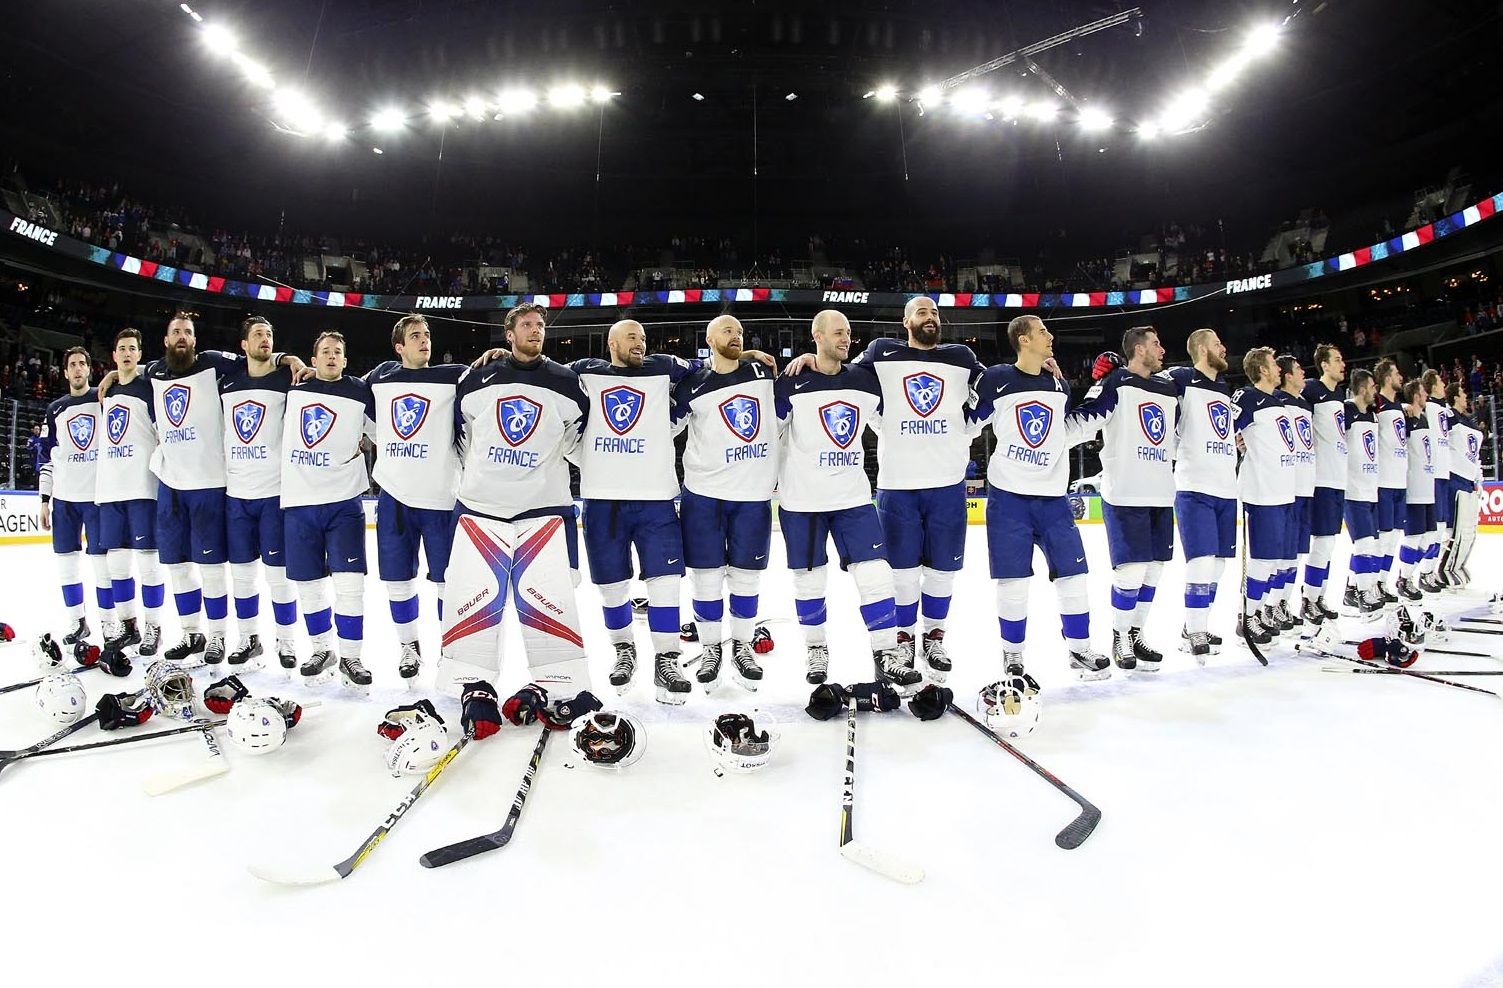 Прогнозы и коэффициенты на выступление сборной Франции на ЧМ-2022 по хоккею